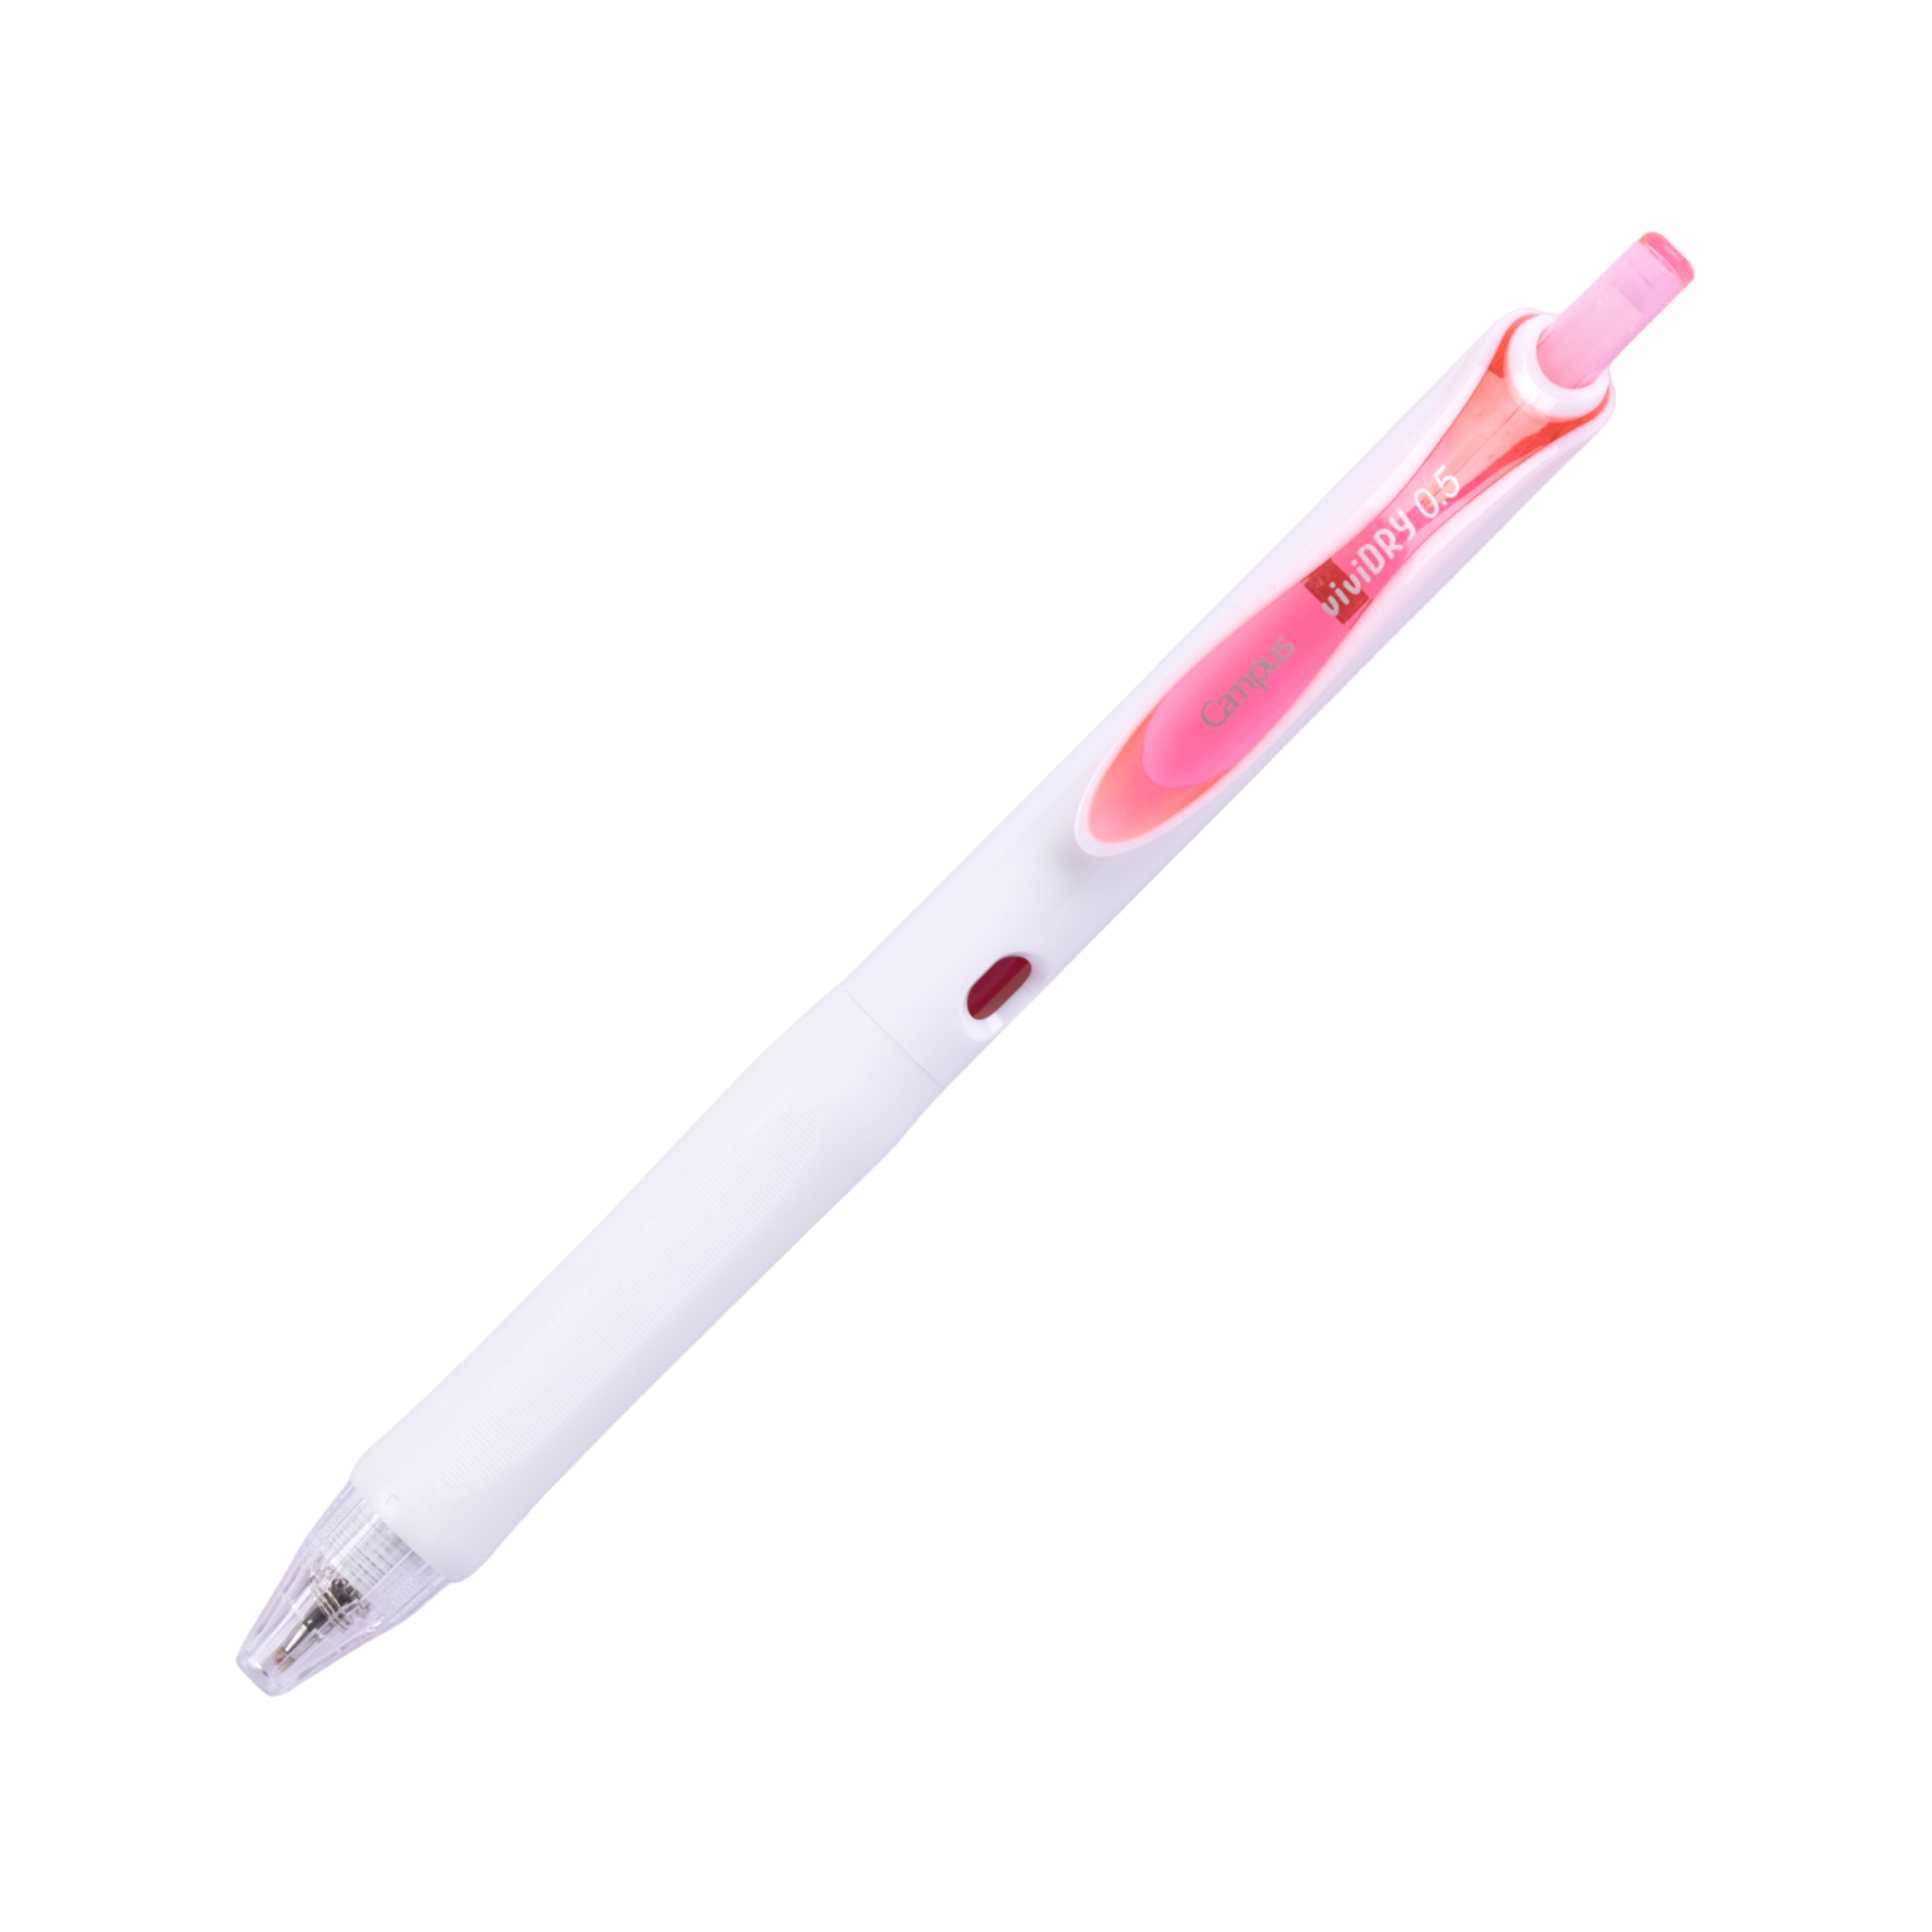 Kokuyo Campus viviDRY Retractable Gel Pen - 0.5 mm - Pink